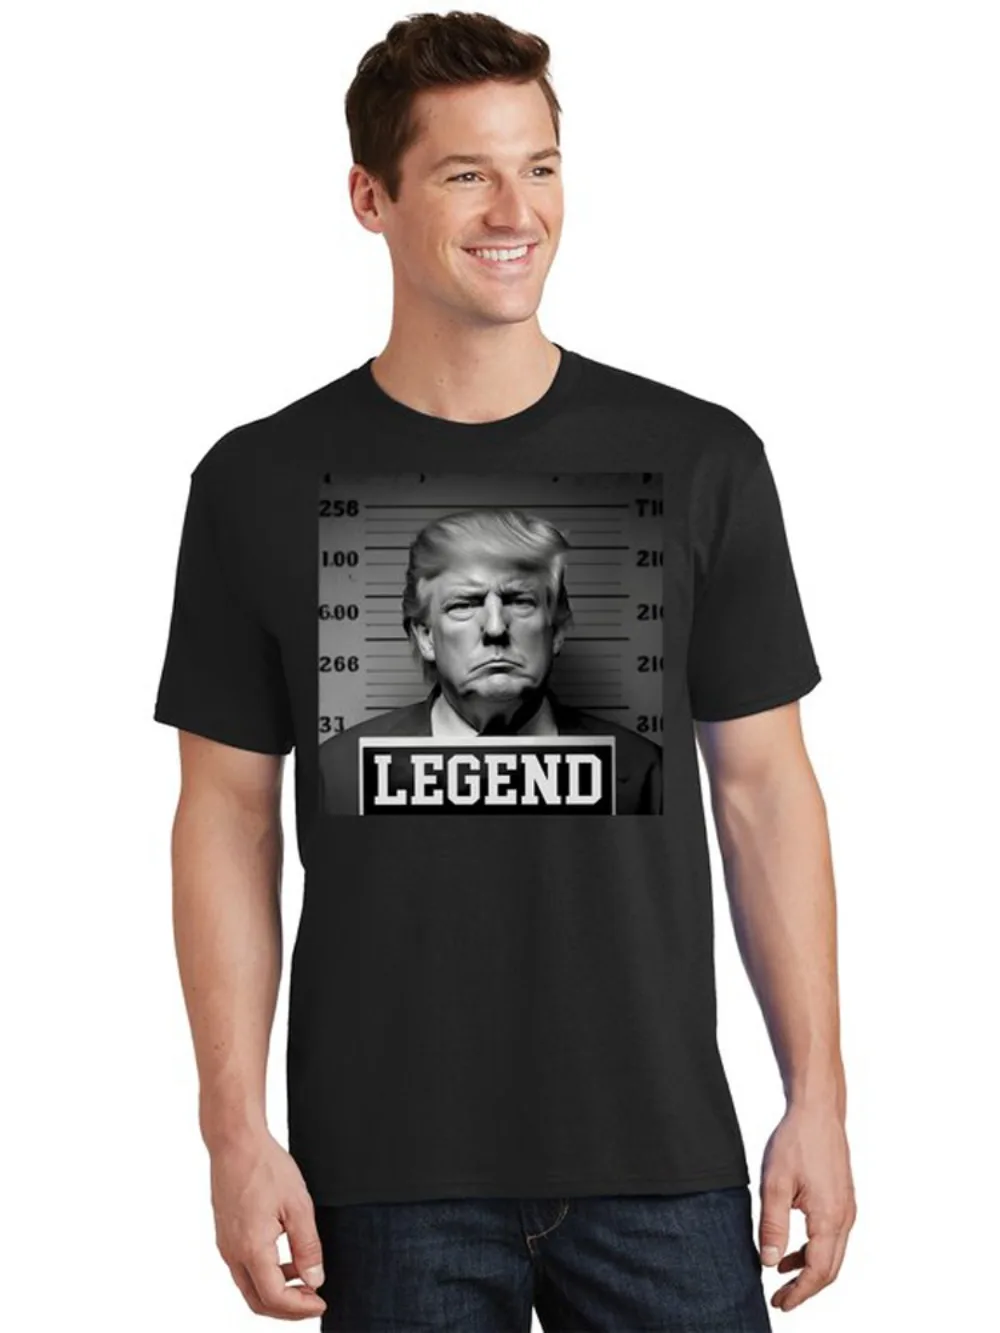 

Футболка с изображением Дональда Трампа Mugshot Legend, новинка, 100% хлопок, с круглым вырезом, летняя повседневная мужская футболка с коротким рукавом, размер S-3XL